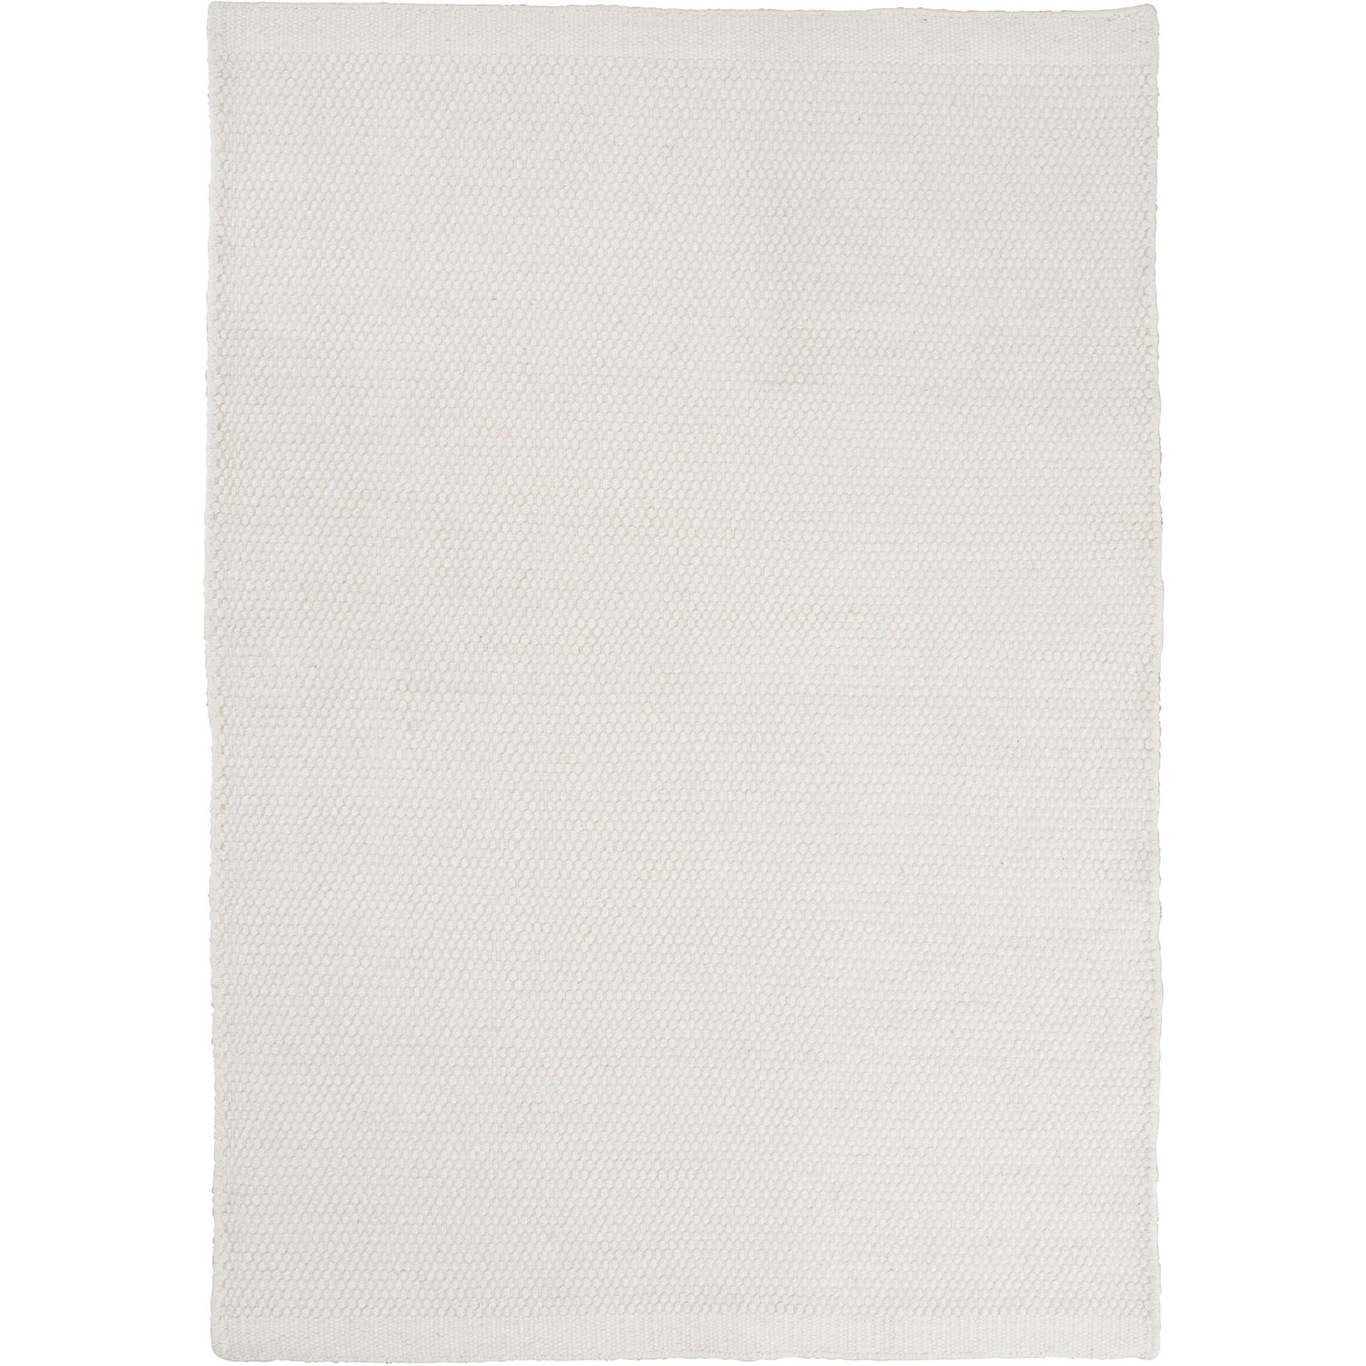 Asko Teppich Weiß, 200x300 cm